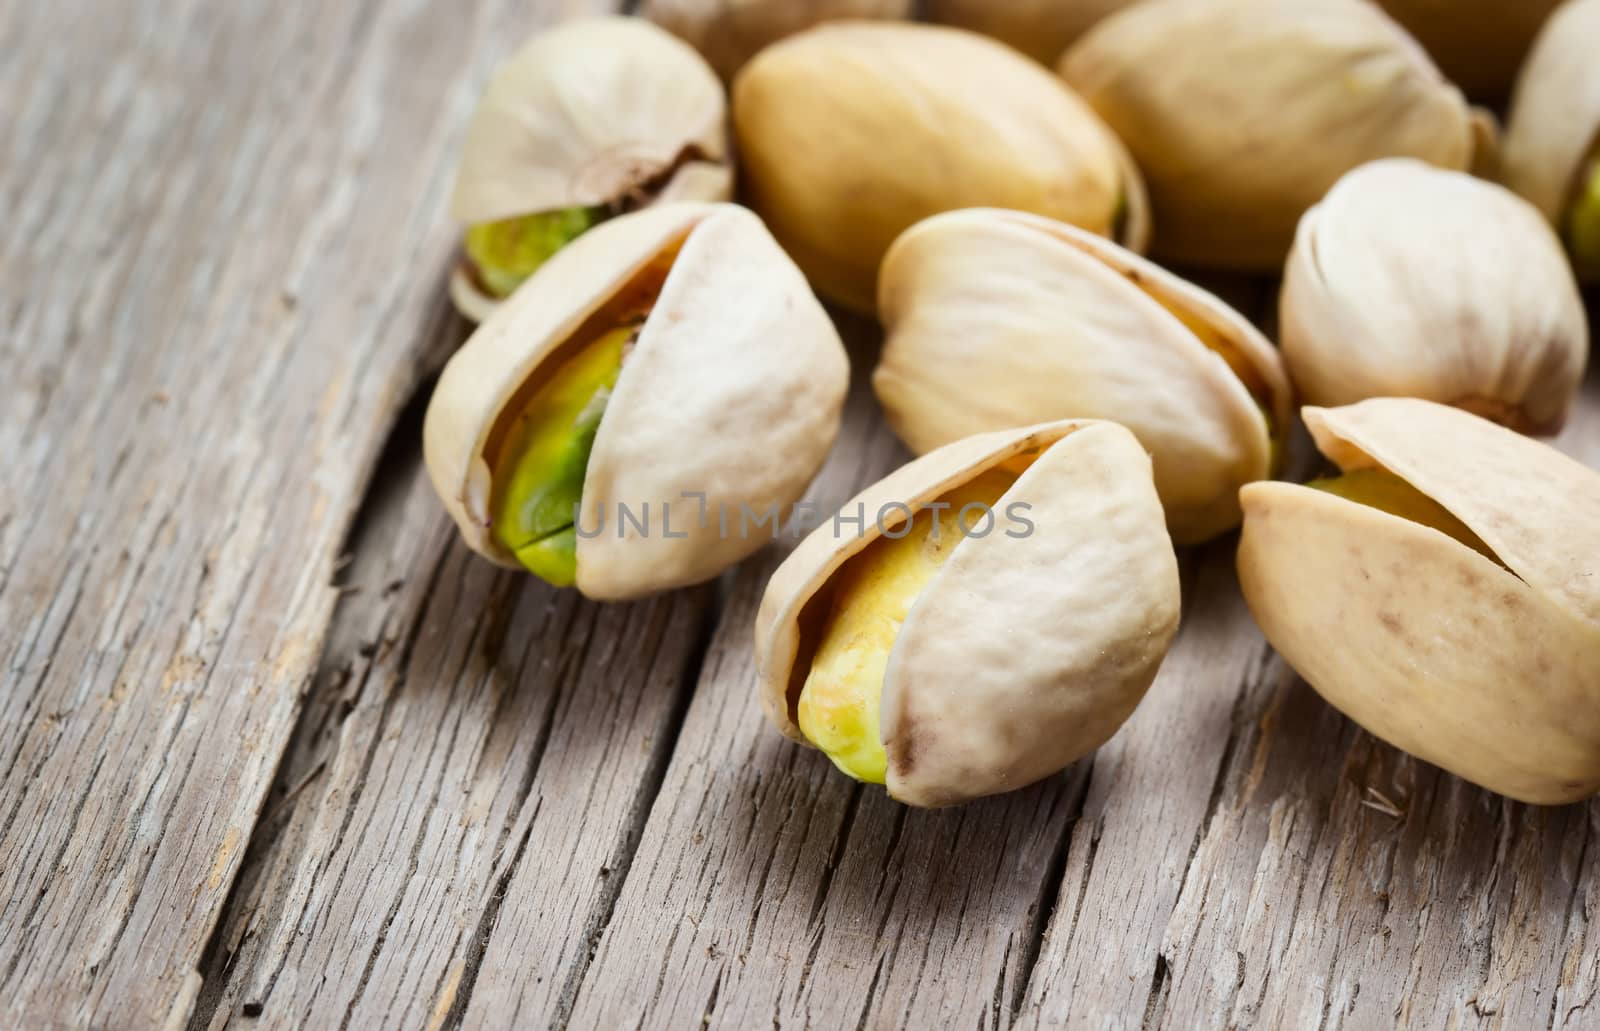 Pistachio nuts by Valengilda